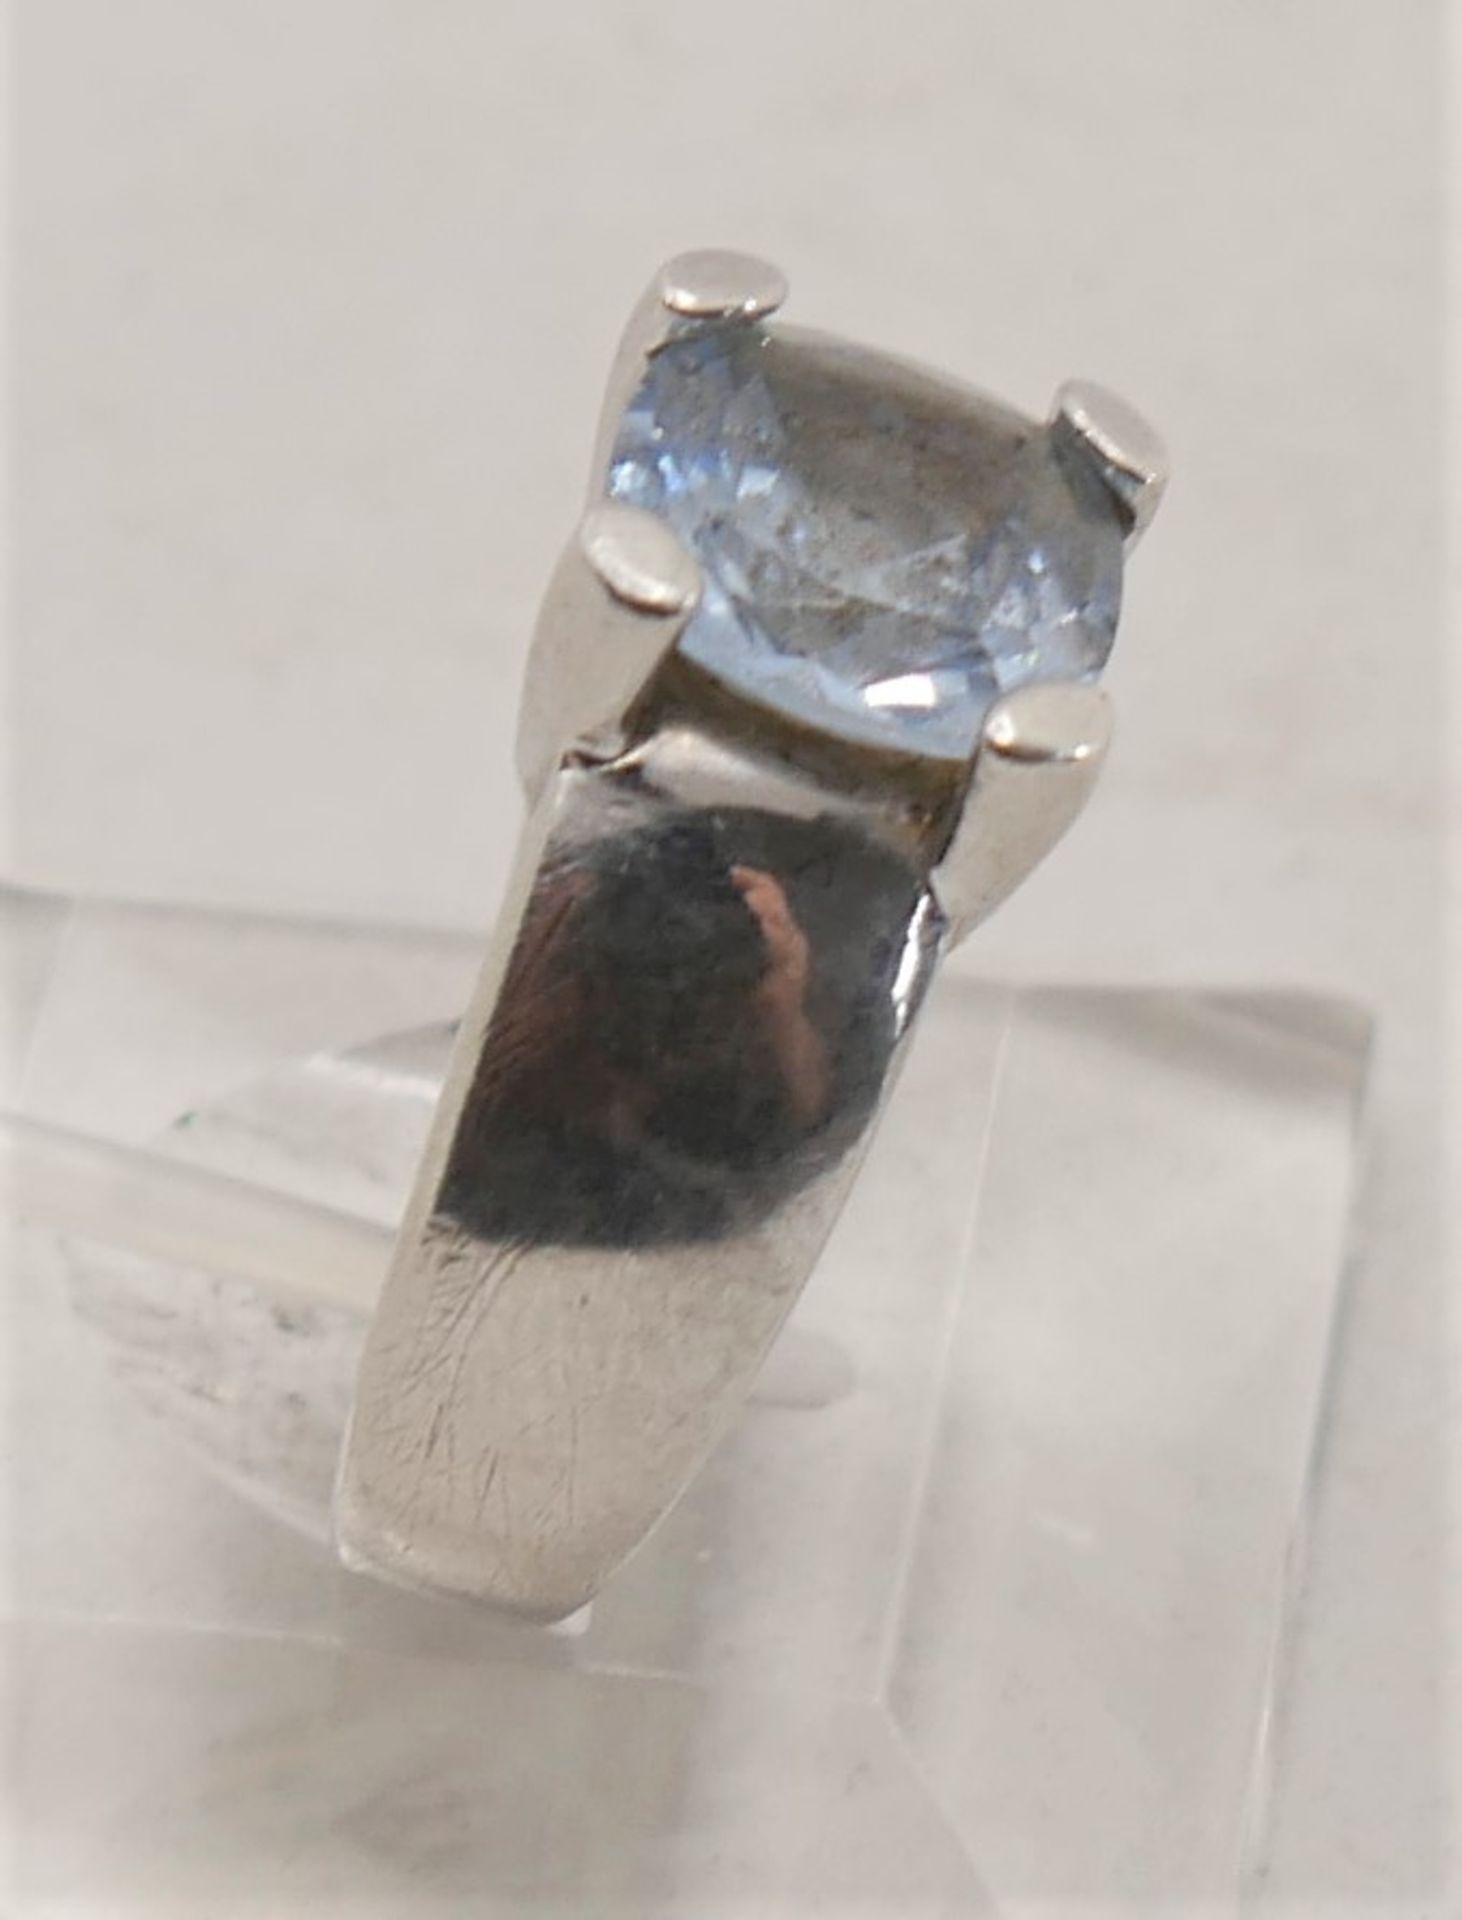 Damenring, 925er Silber gepunzt mit hellblauem Glasstein, Ringgröße 60. - Image 2 of 2